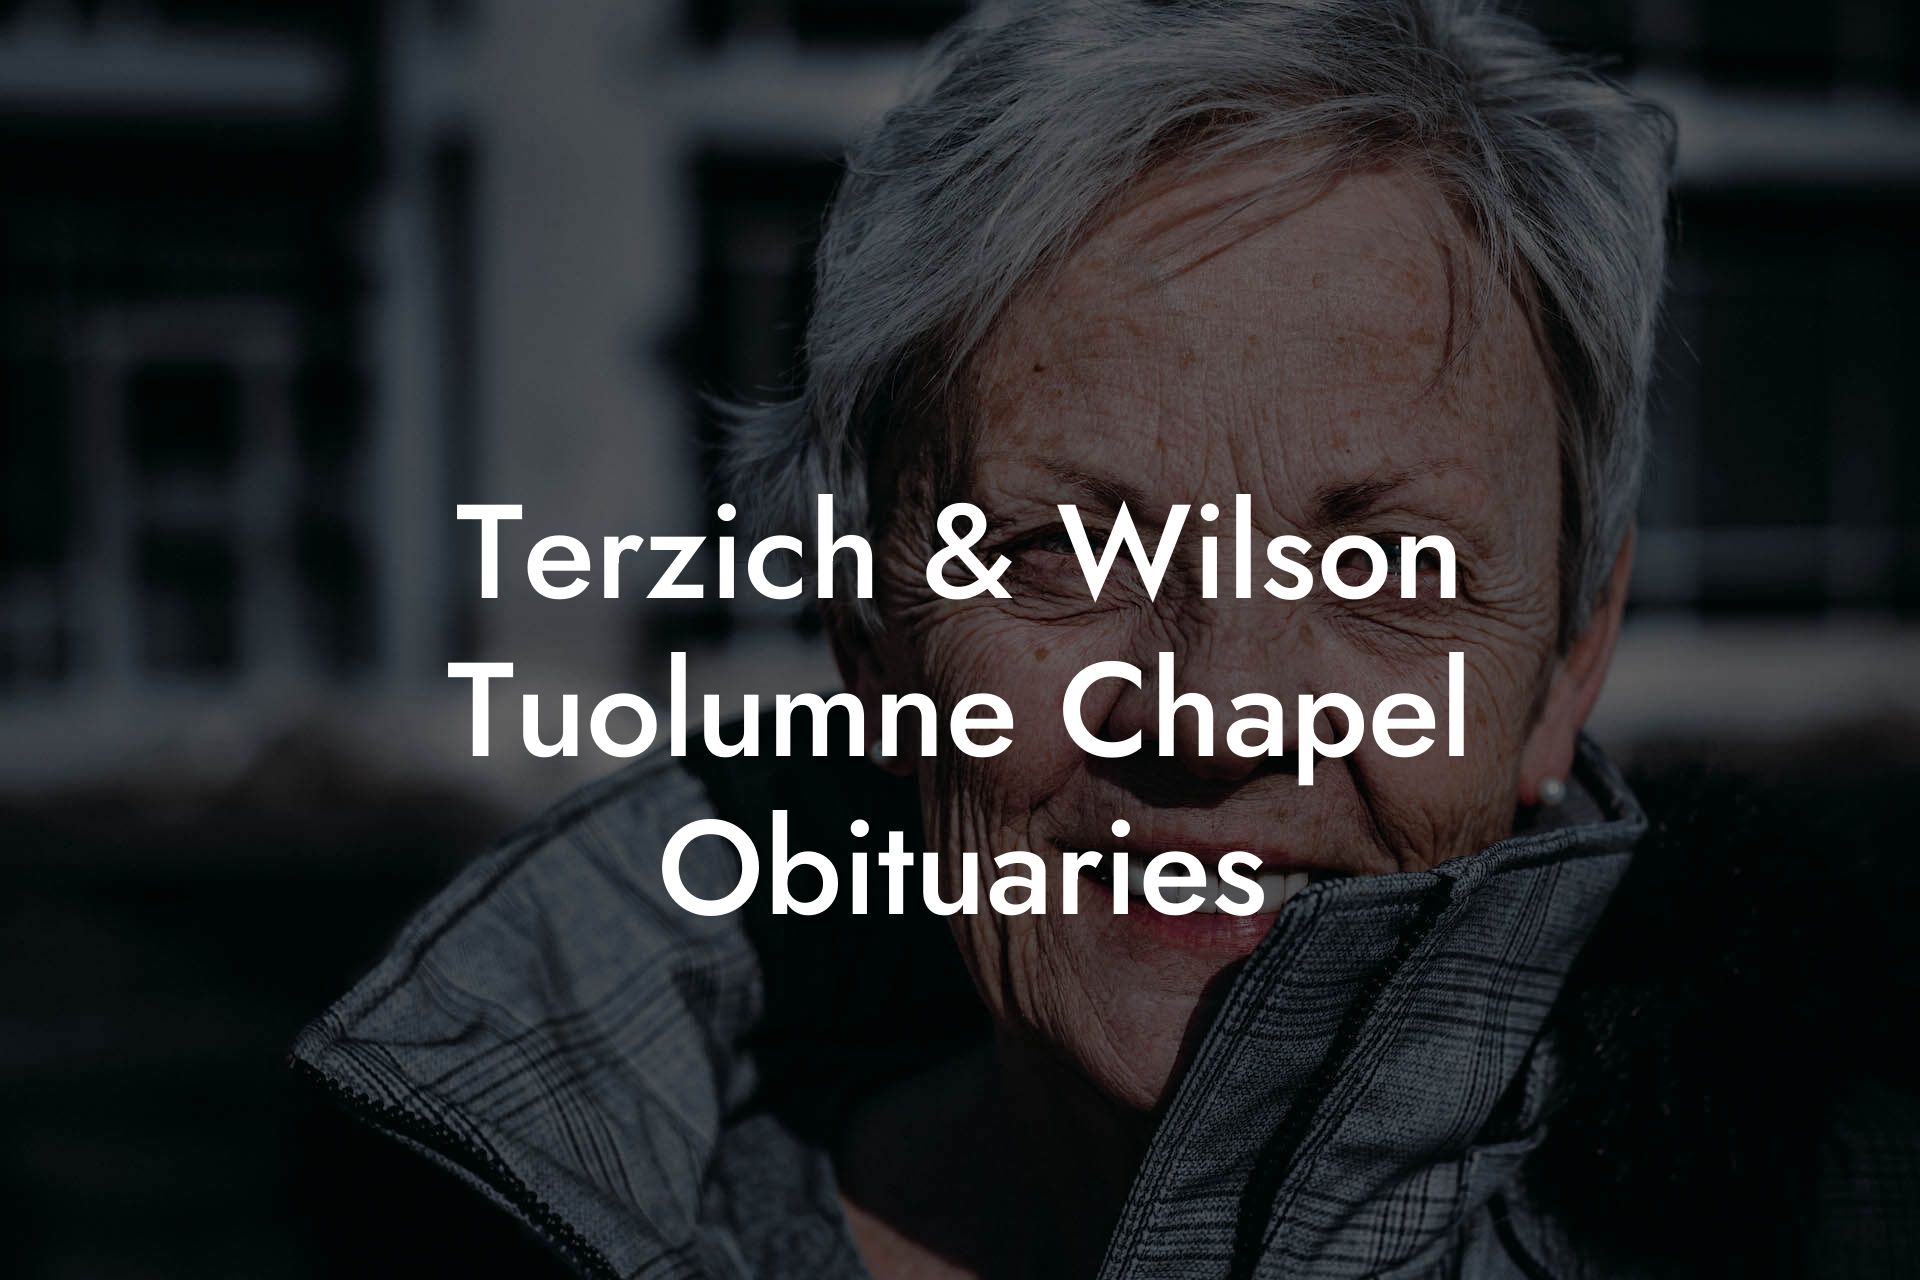 Terzich & Wilson Tuolumne Chapel Obituaries